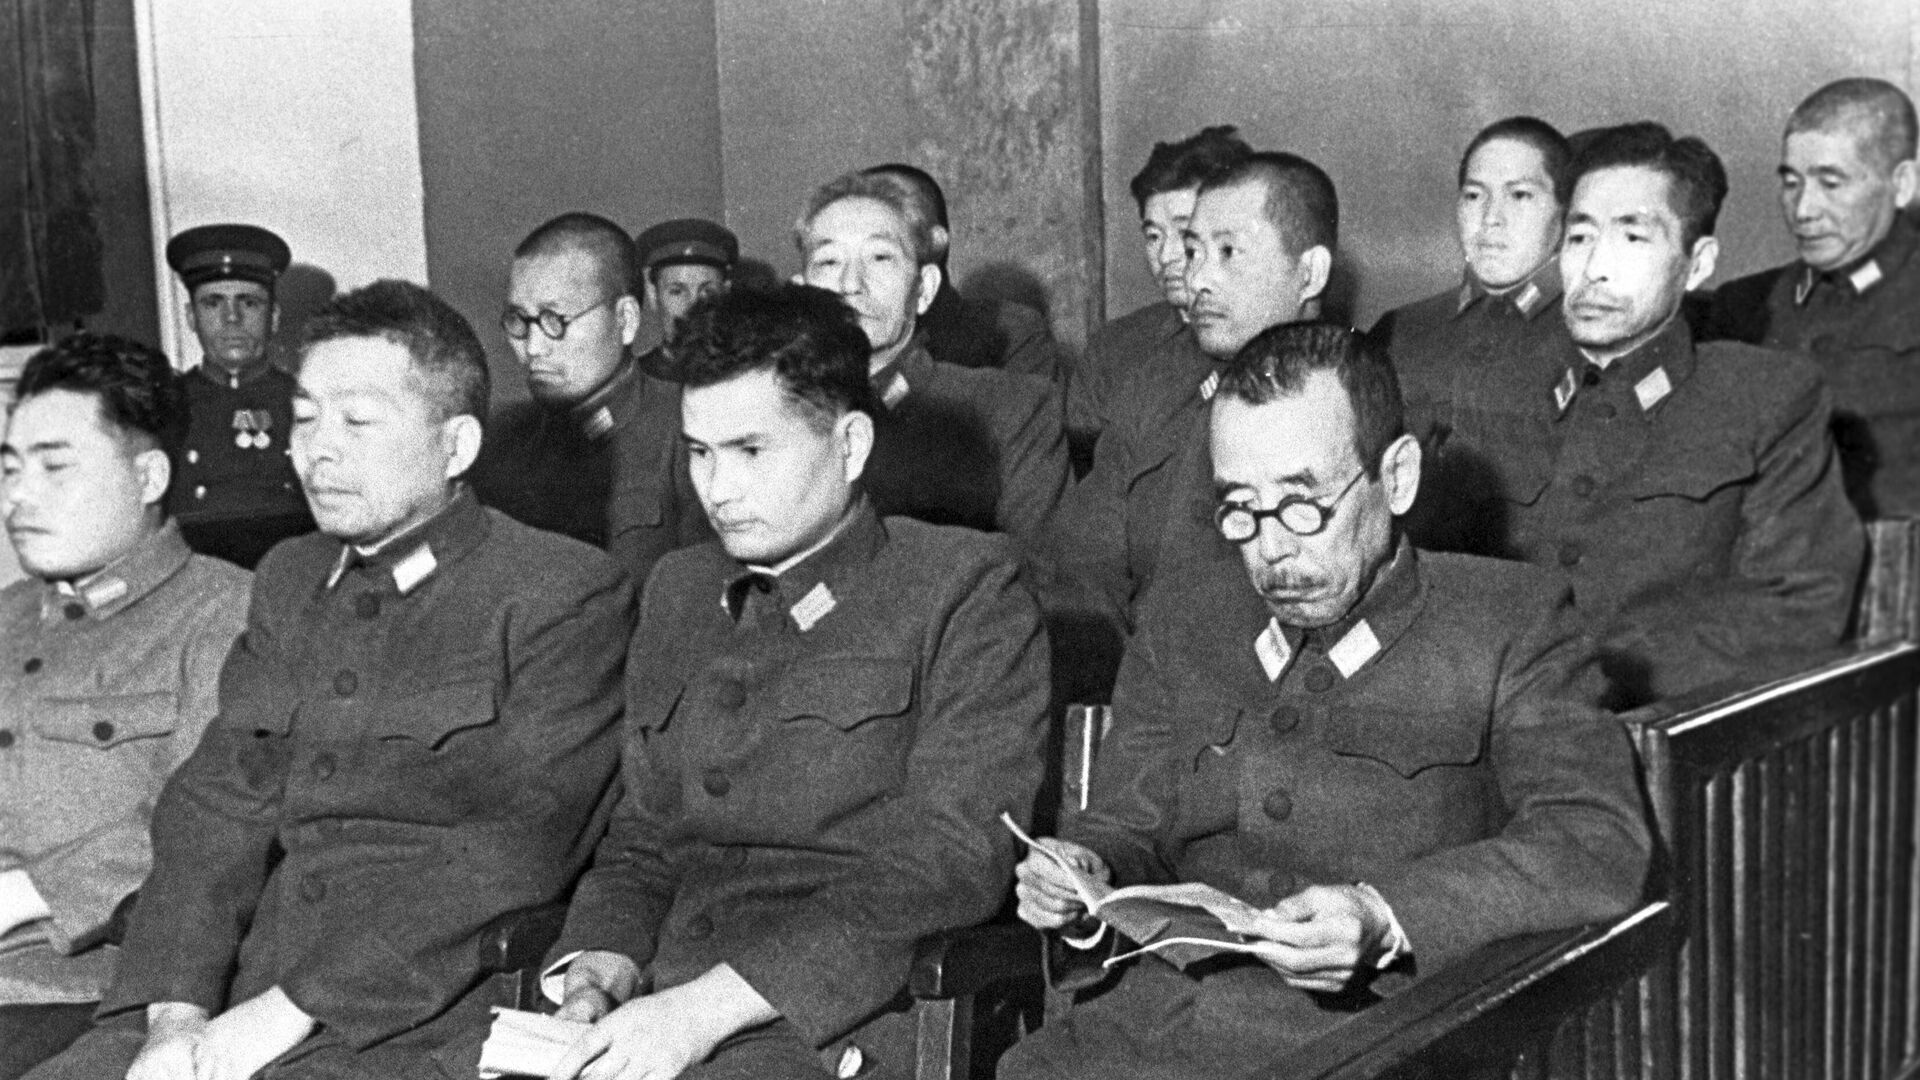 Buvusieji Japonijos kariuomenės kariai, apkaltinti rengiantis naudoti bakteriologinius ginklus, teisme - Sputnik Lietuva, 1920, 20.08.2021